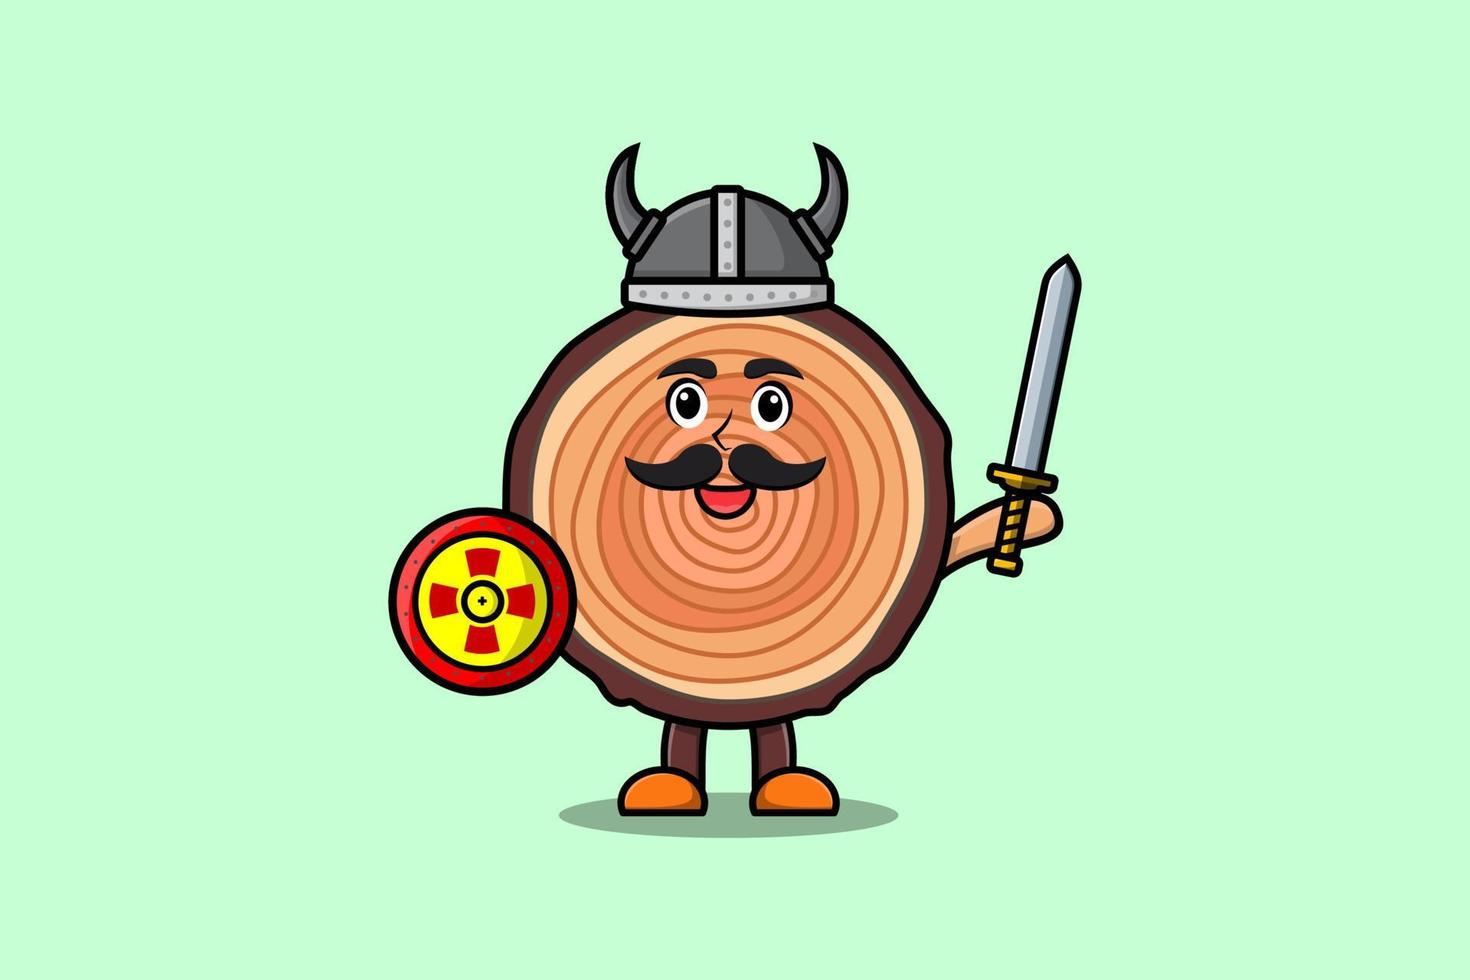 pirata vikingo del tronco de madera del personaje de dibujos animados lindo vector